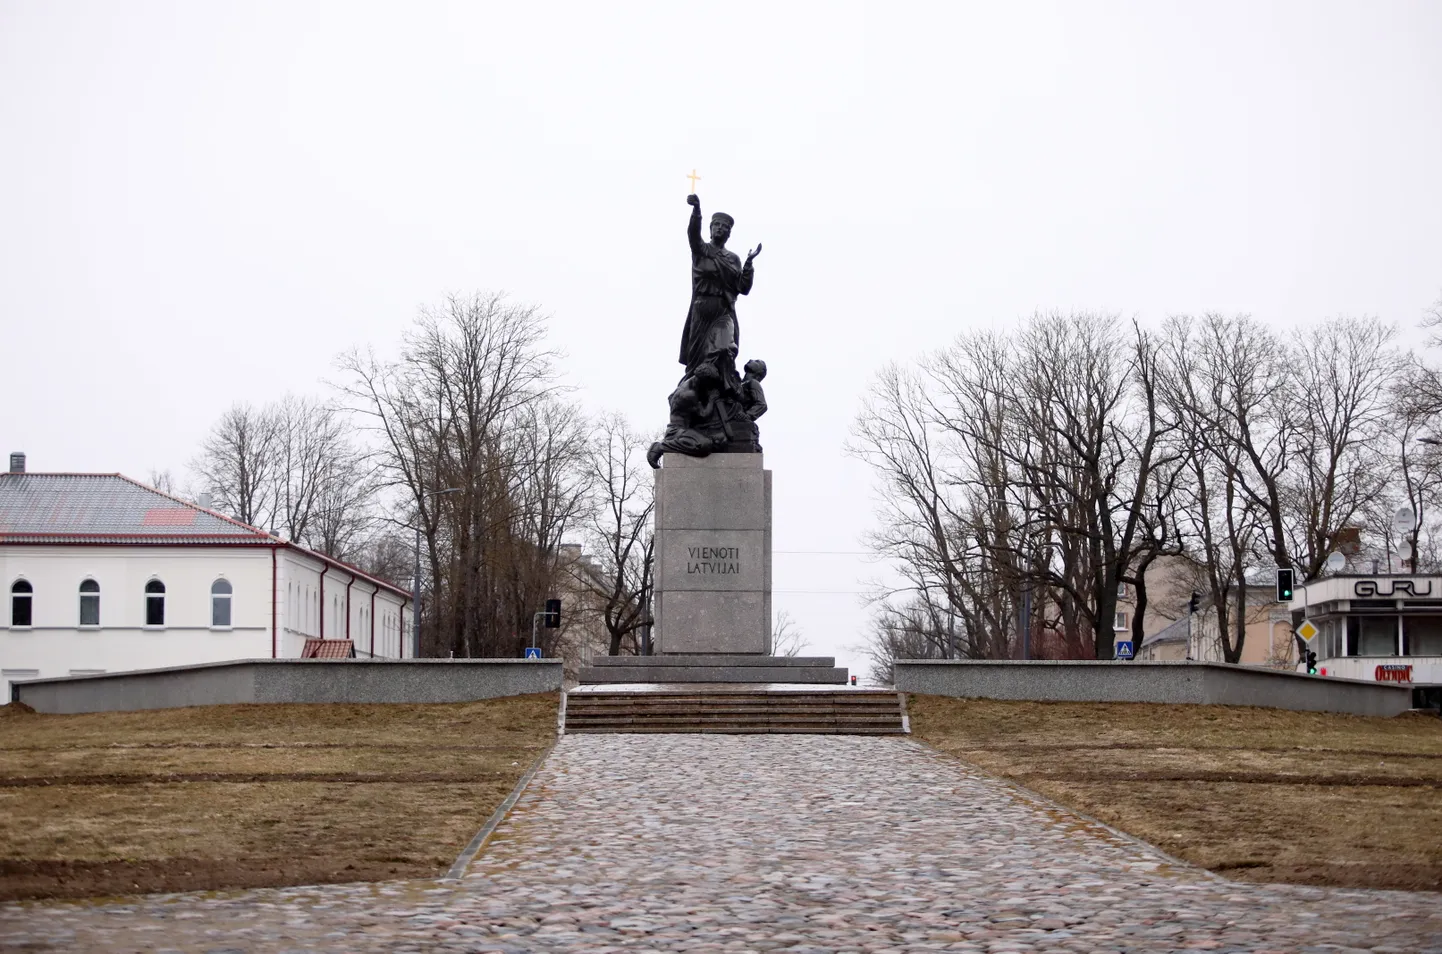 Памятник "Едины для Латвии" ()латгальская Мара в Резекне